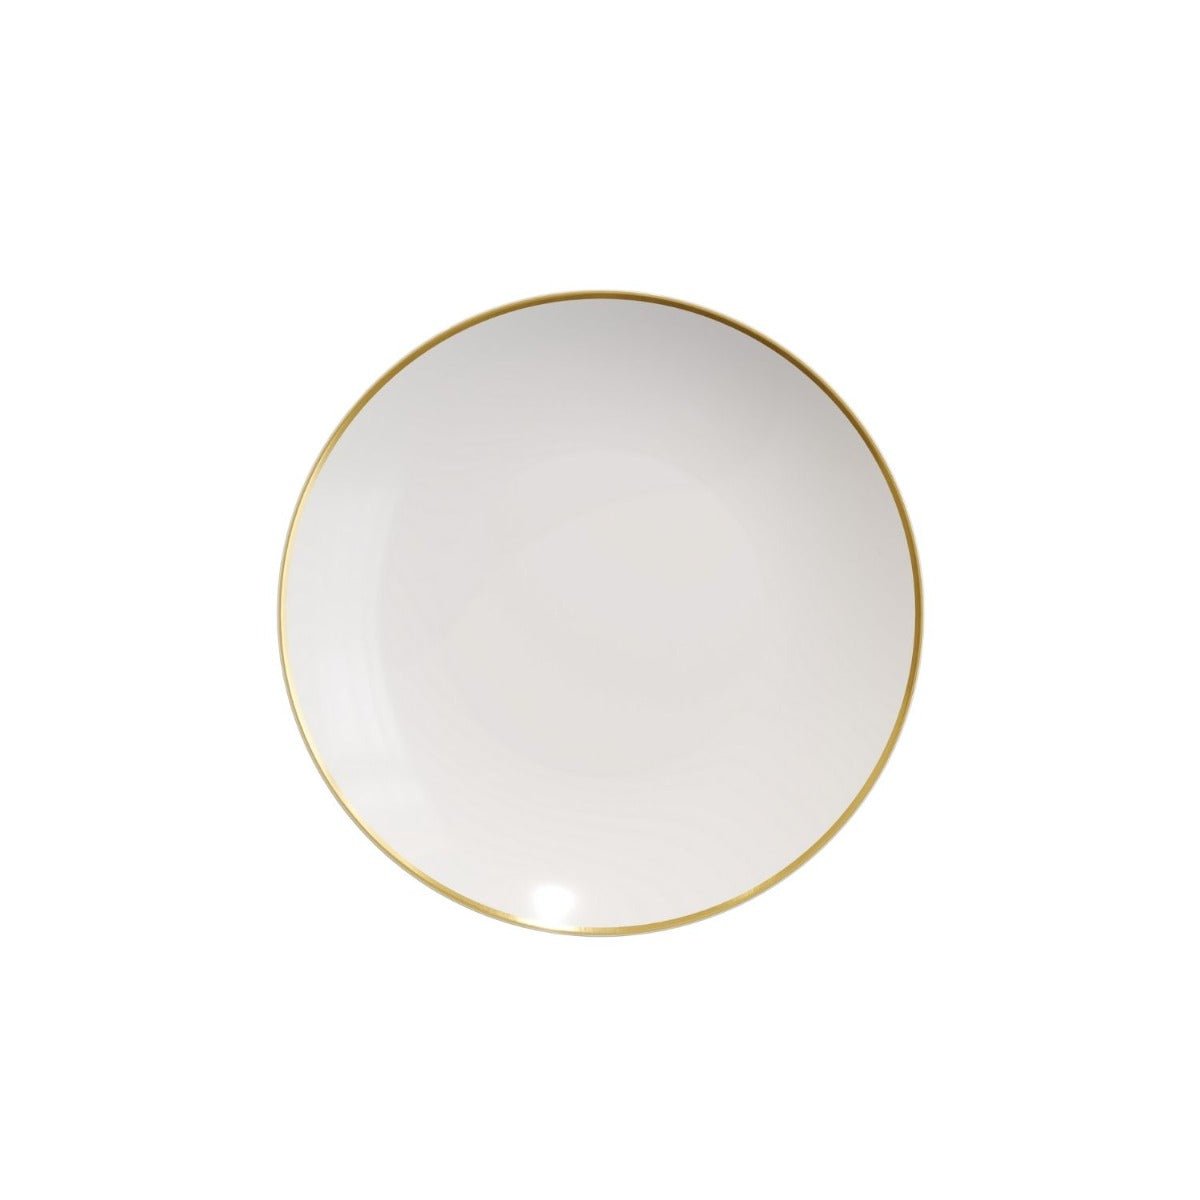 6" Classic Gold Design Plastic Plates (120 Count)